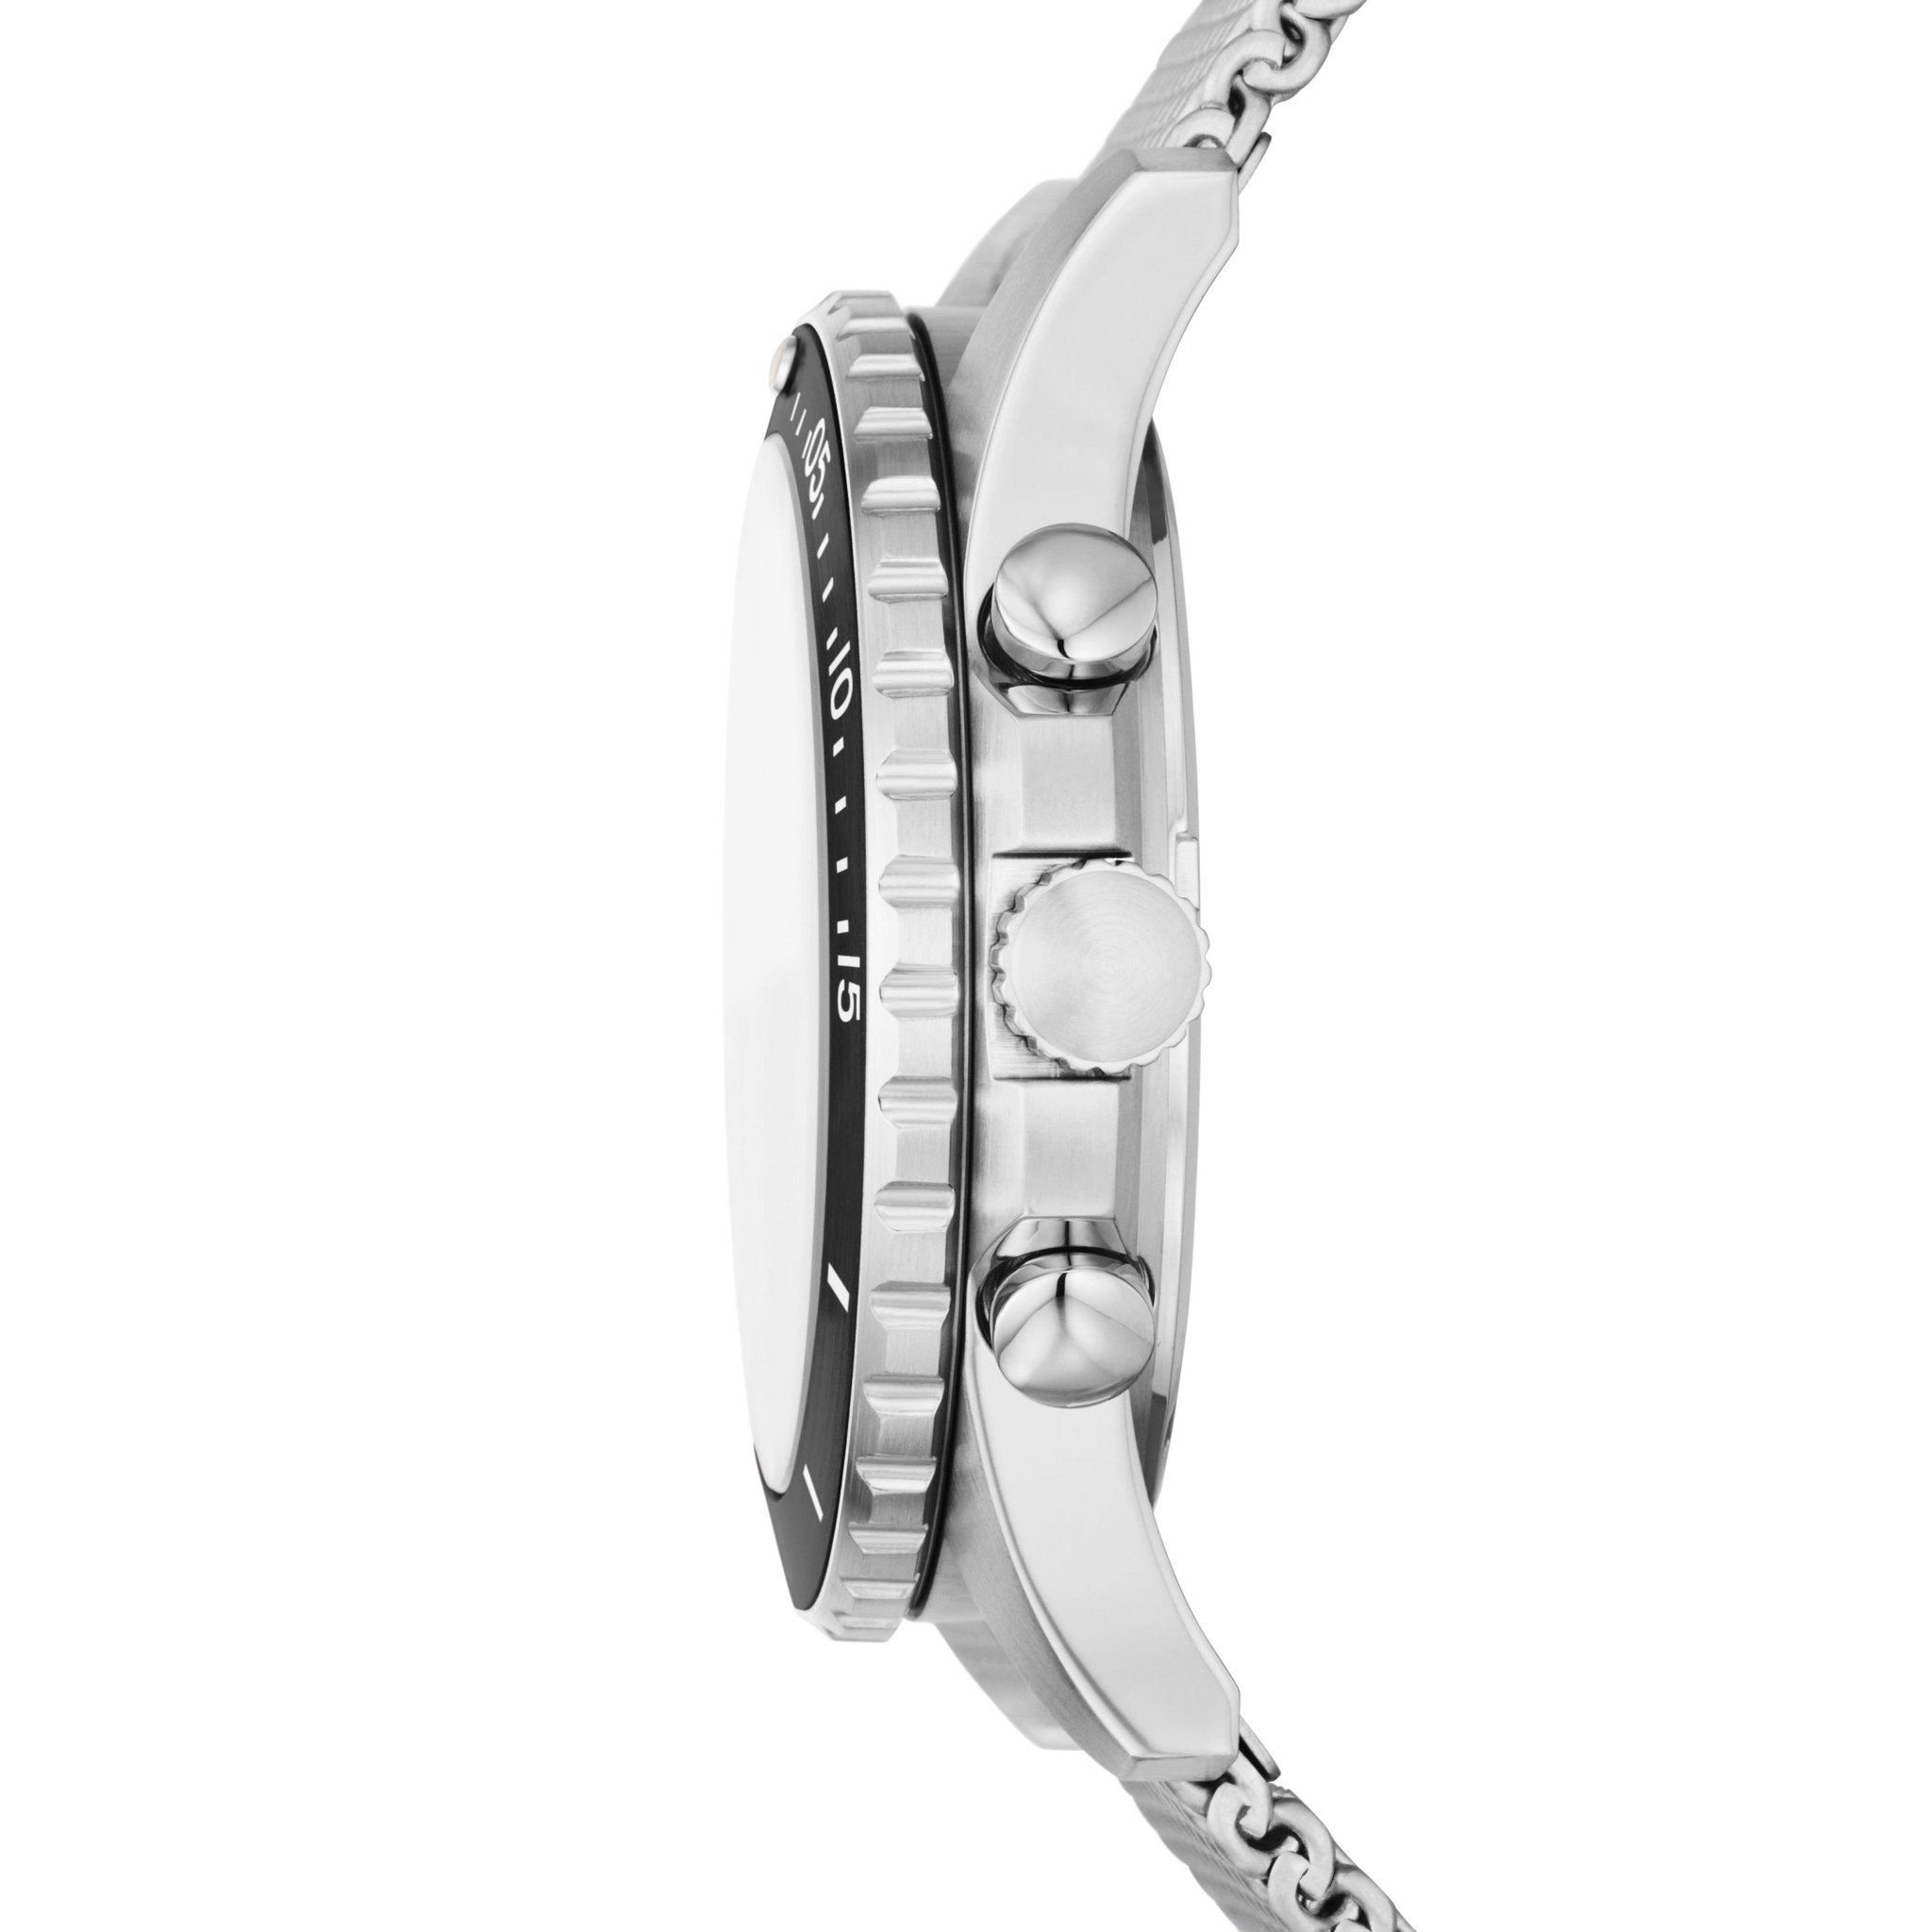  Đồng hồ nam Fossil FB - 01 dây thép không gỉ FS5915 - màu bạc 